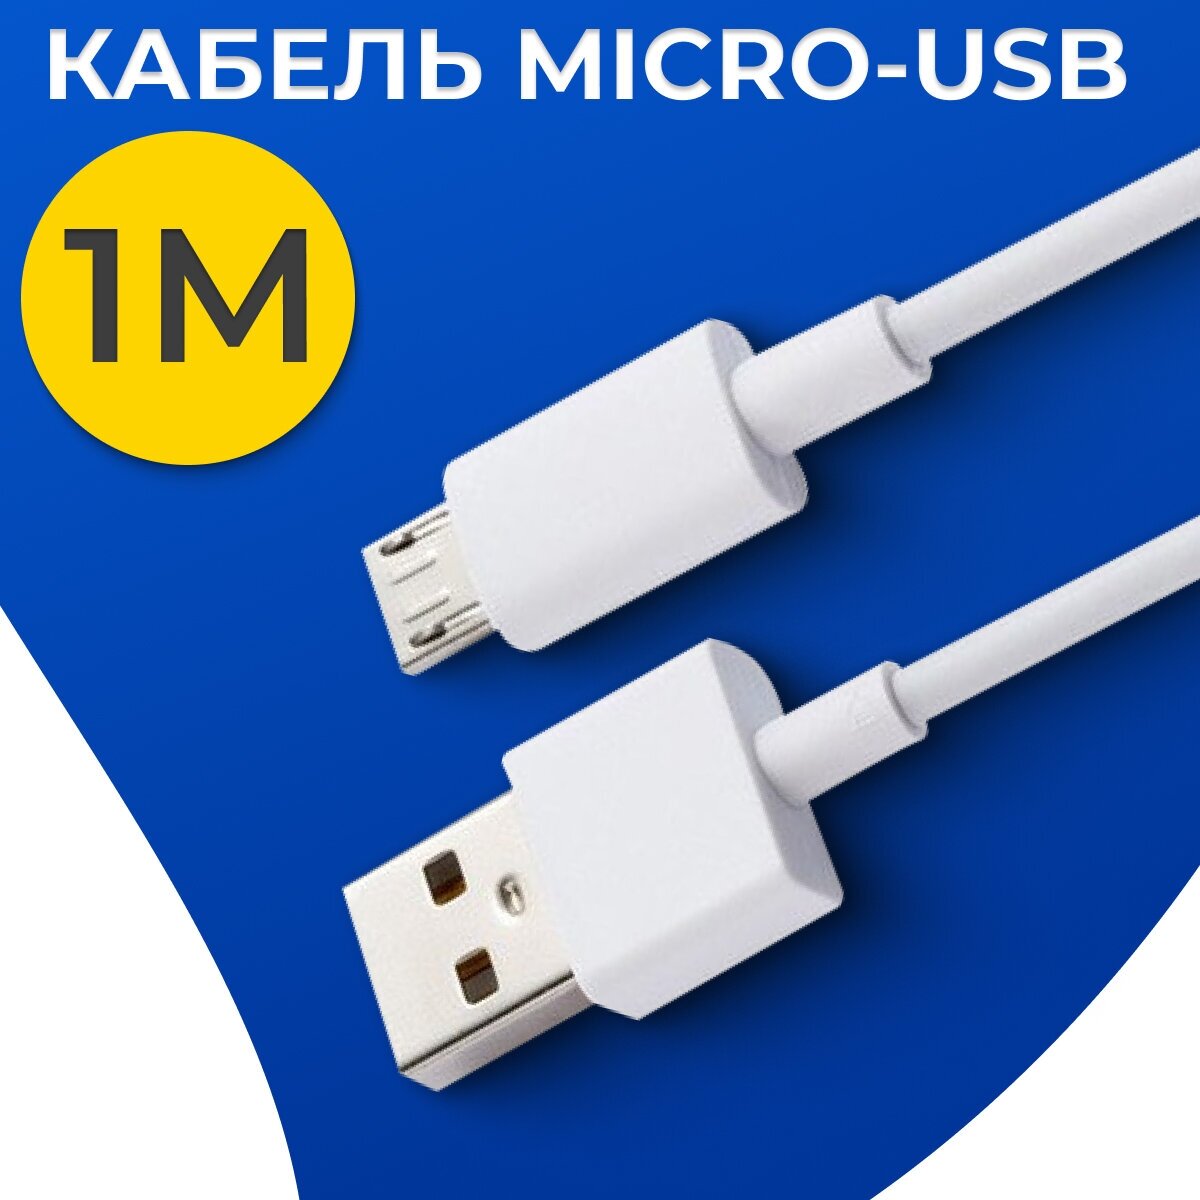 Кабель для зарядки Micro USB - USB / Провод Микро ЮСБ - ЮСБ для зарядки телефона, планшета, наушников / Белый шнур для зарядки (1 метр)